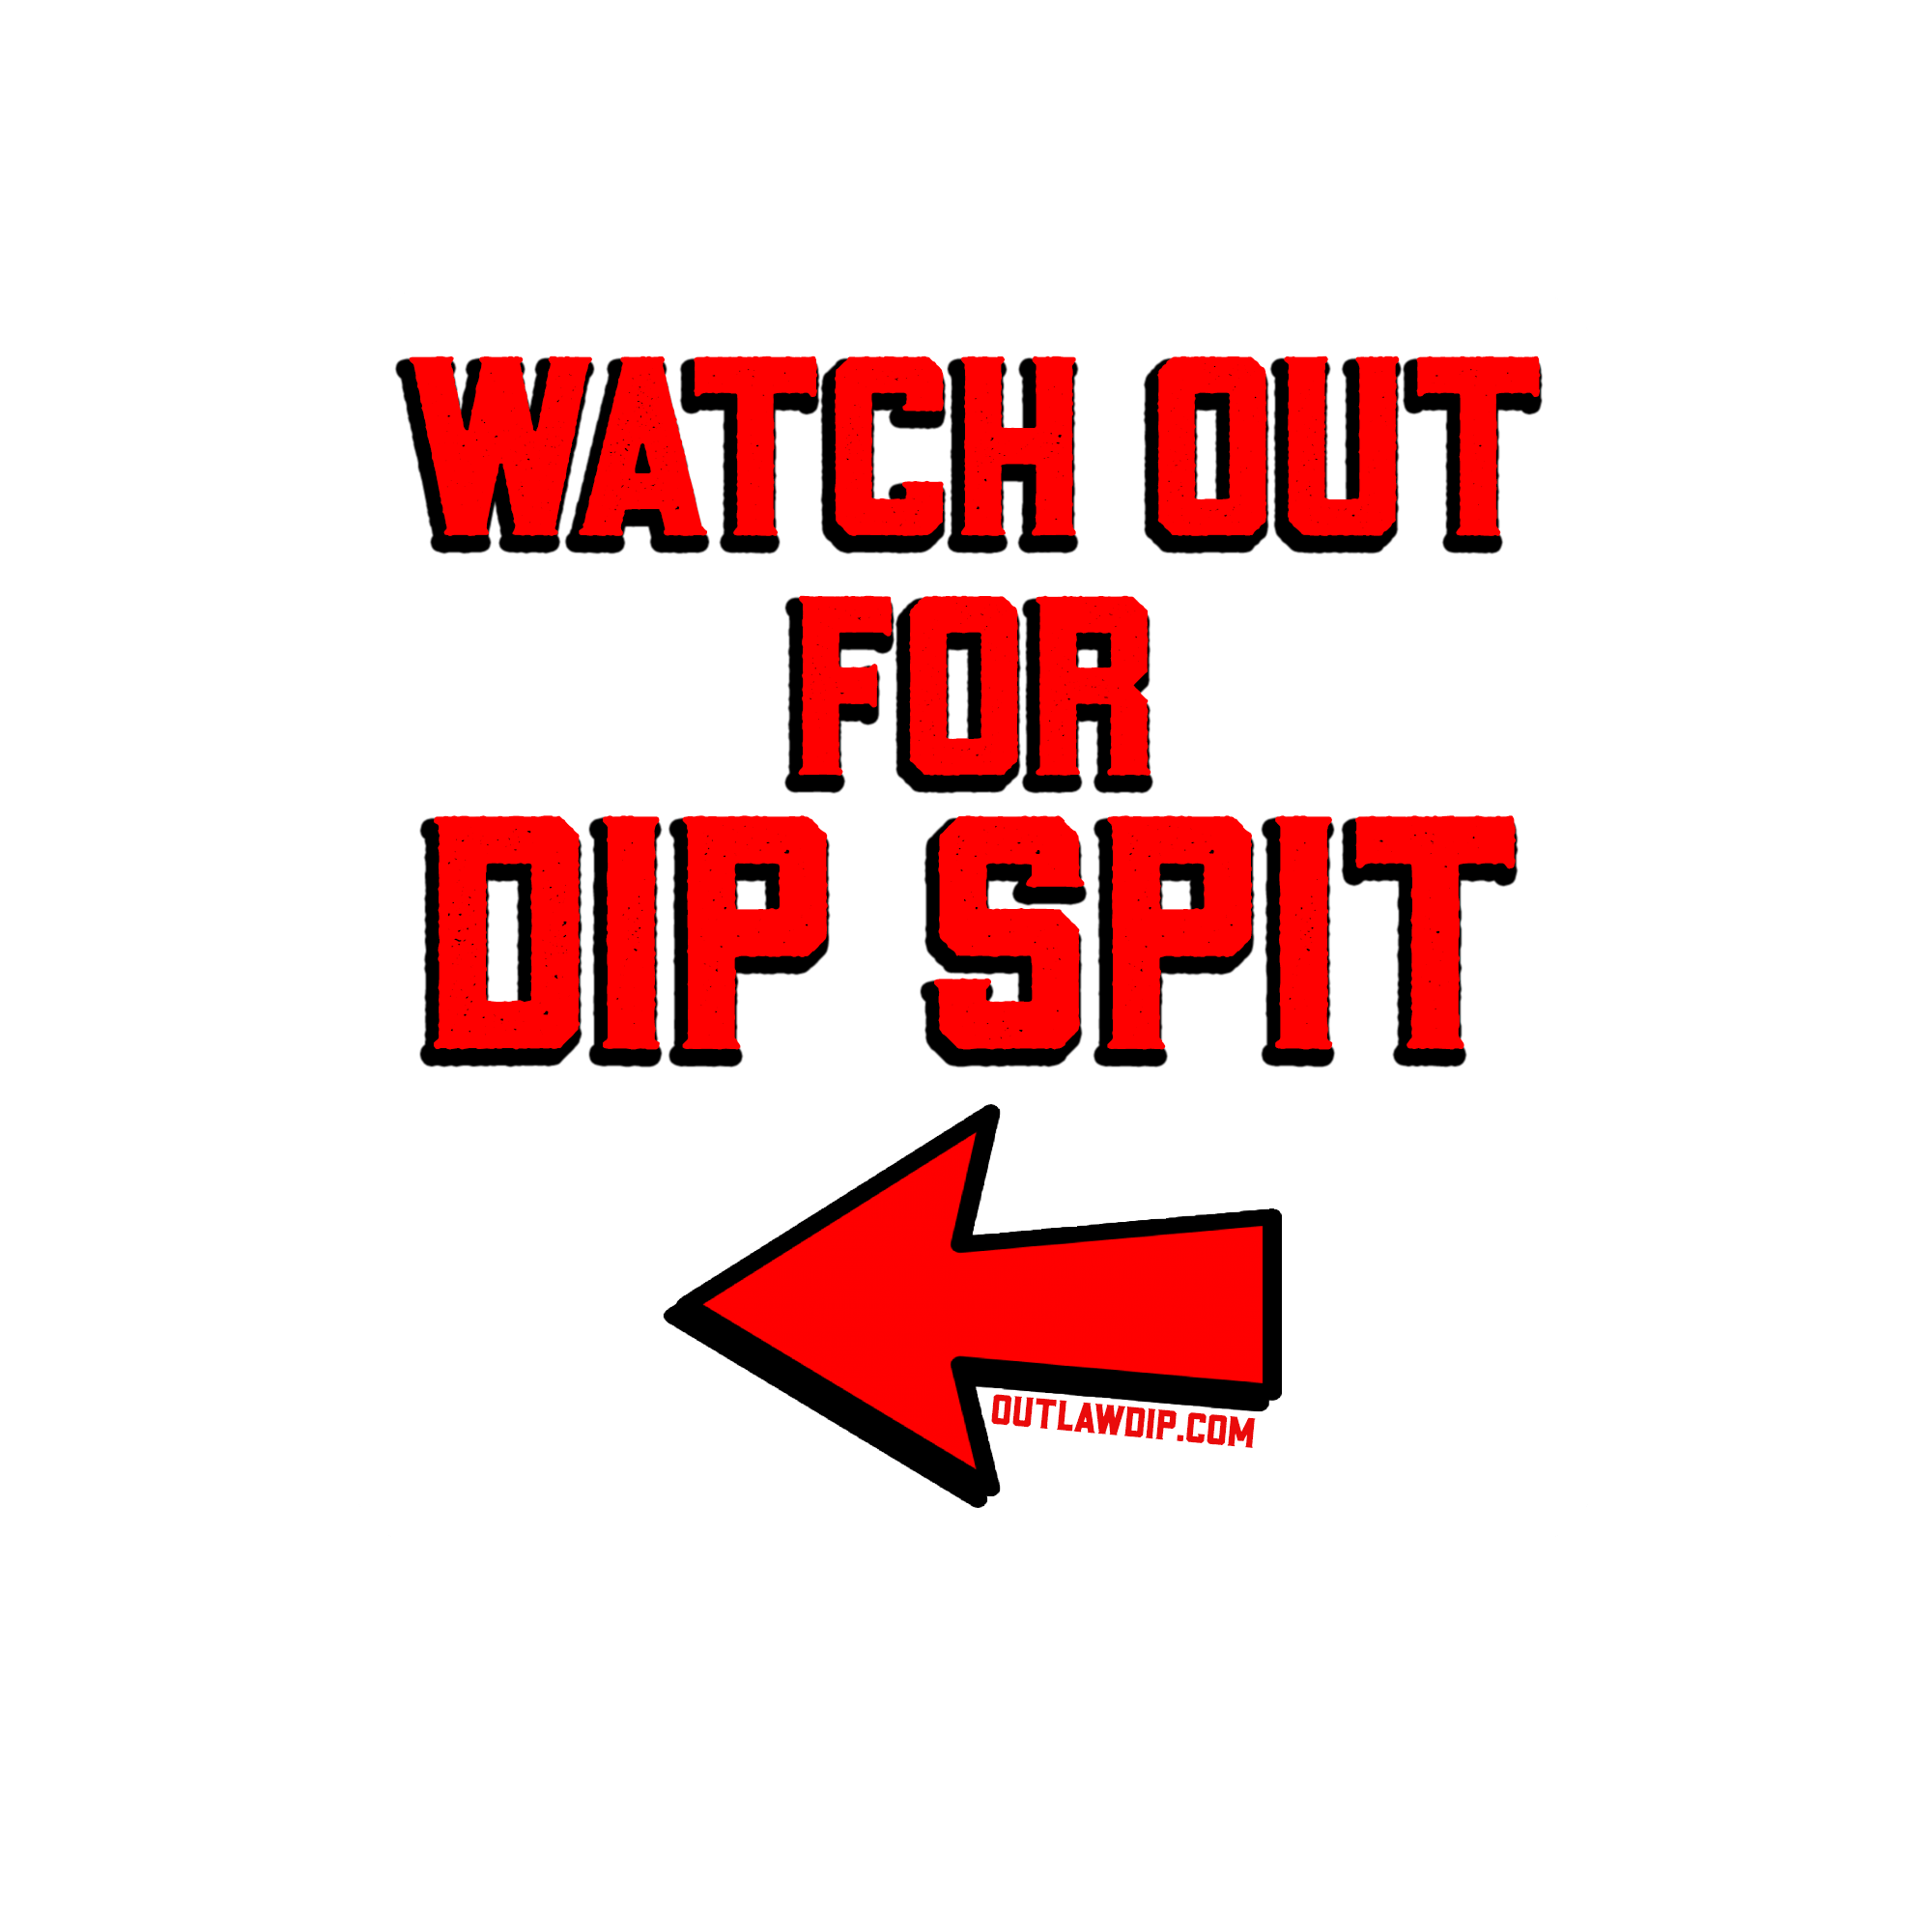 Dipspit 873795